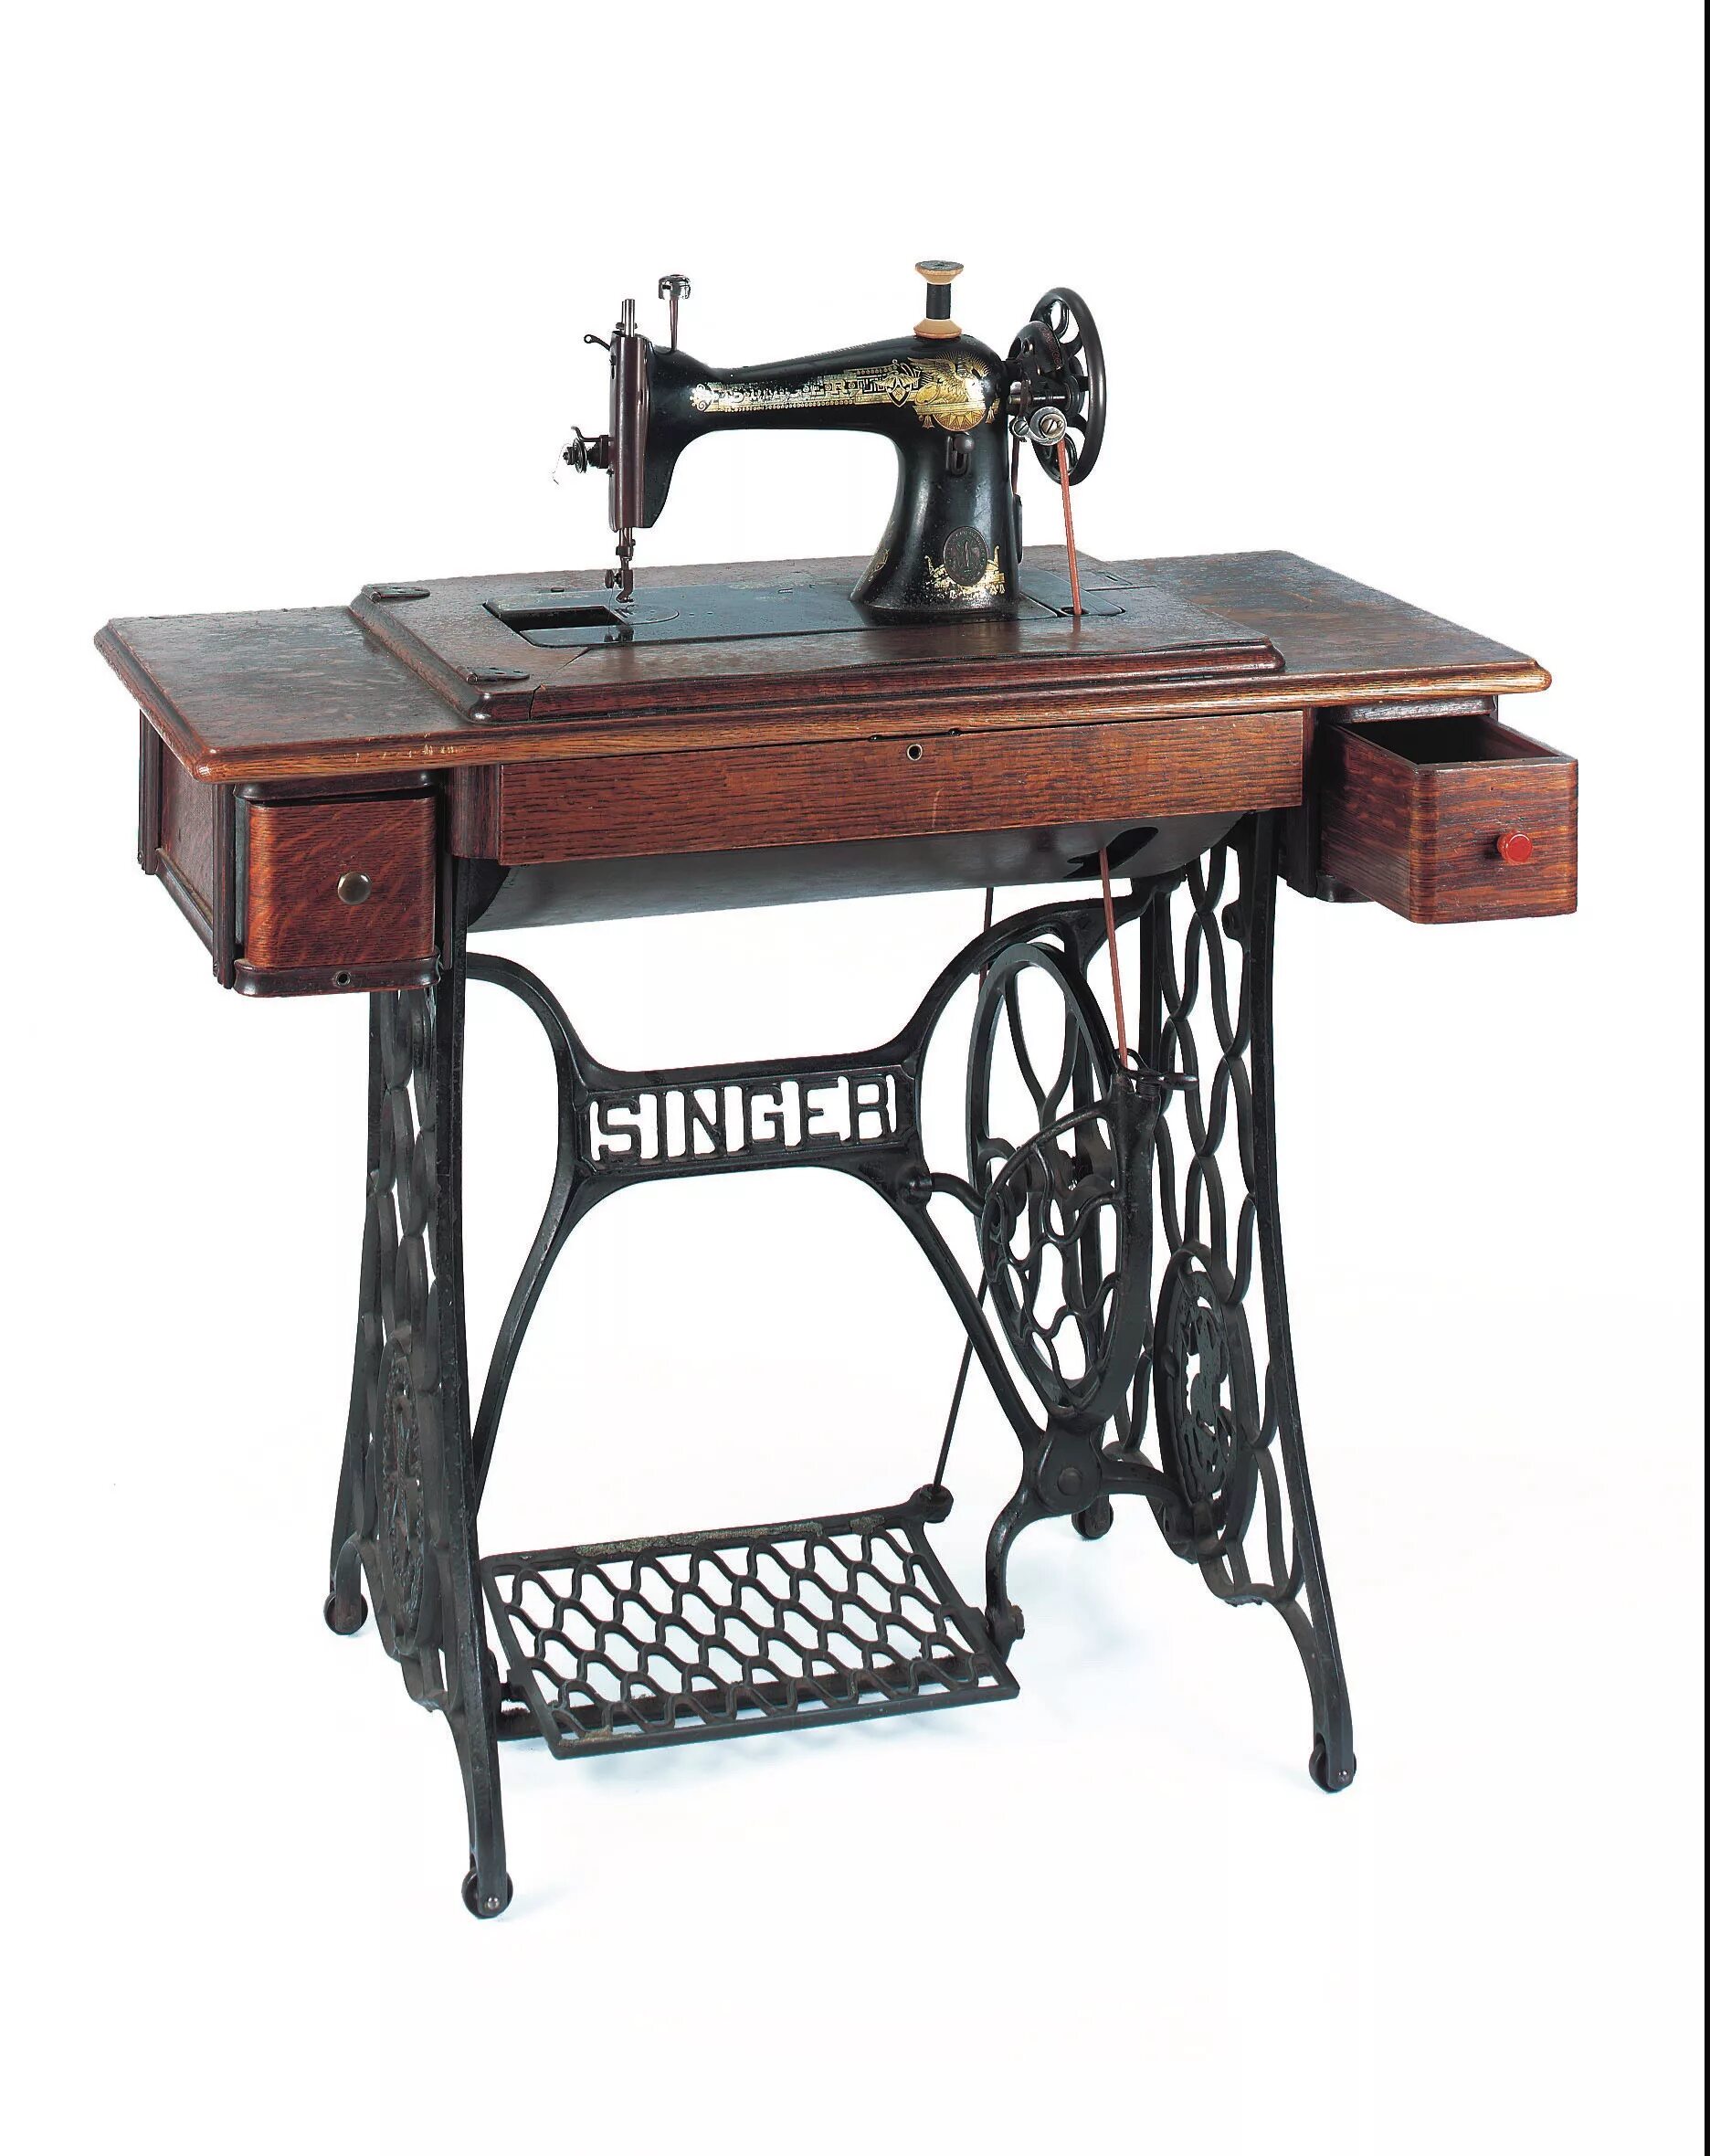 Швейные машинки металлические. Швейная машинка Зингер ретро. Швейная машинка Зингер 18 века. Швейная машинка Зингер 2250.